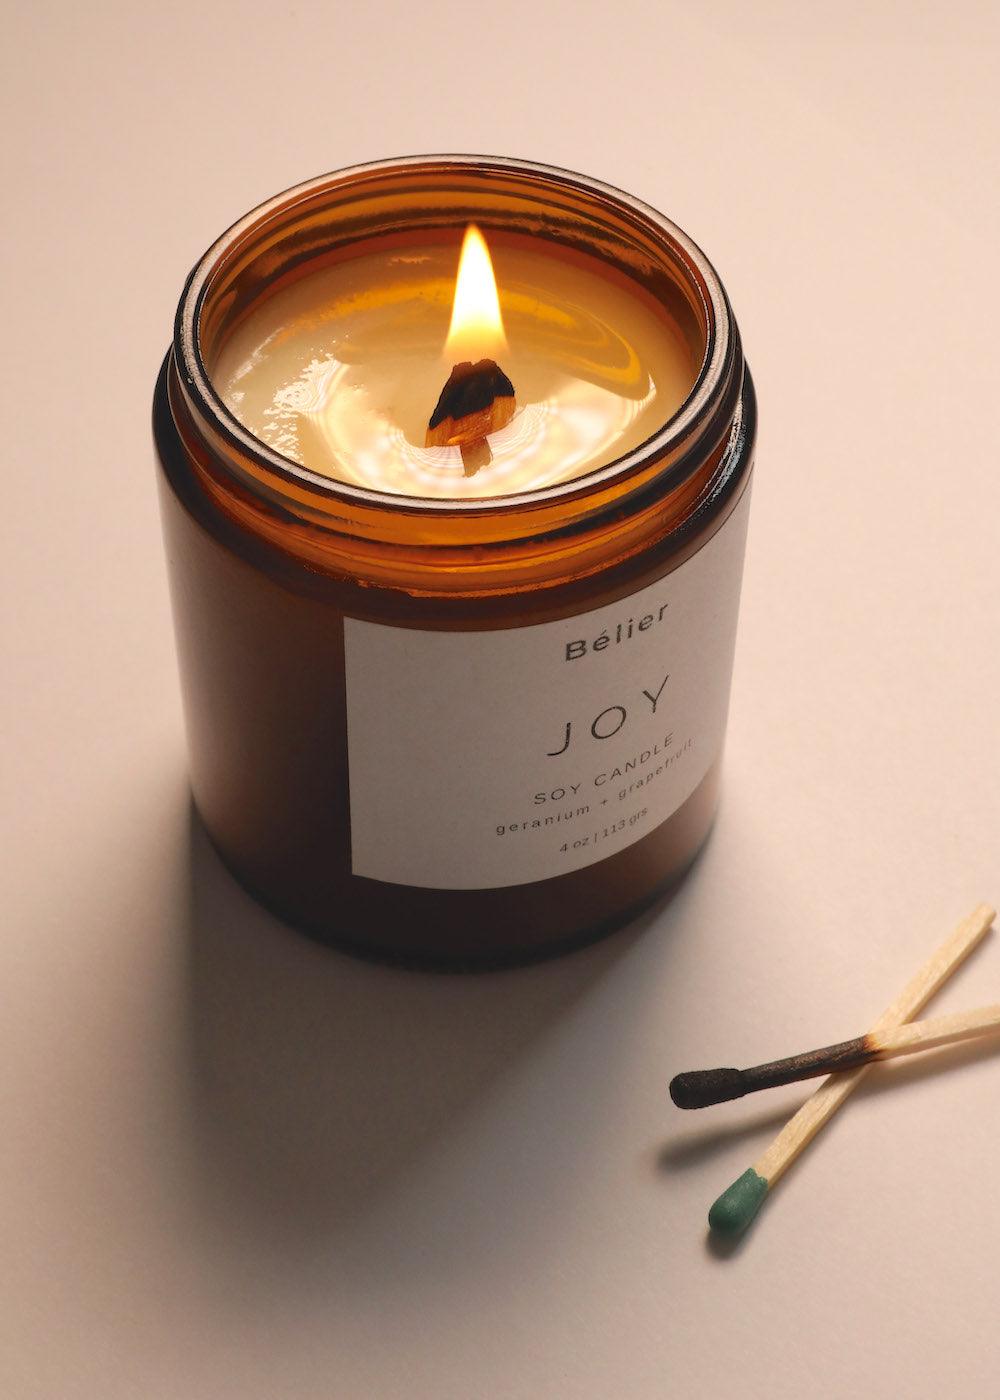 Joy candle